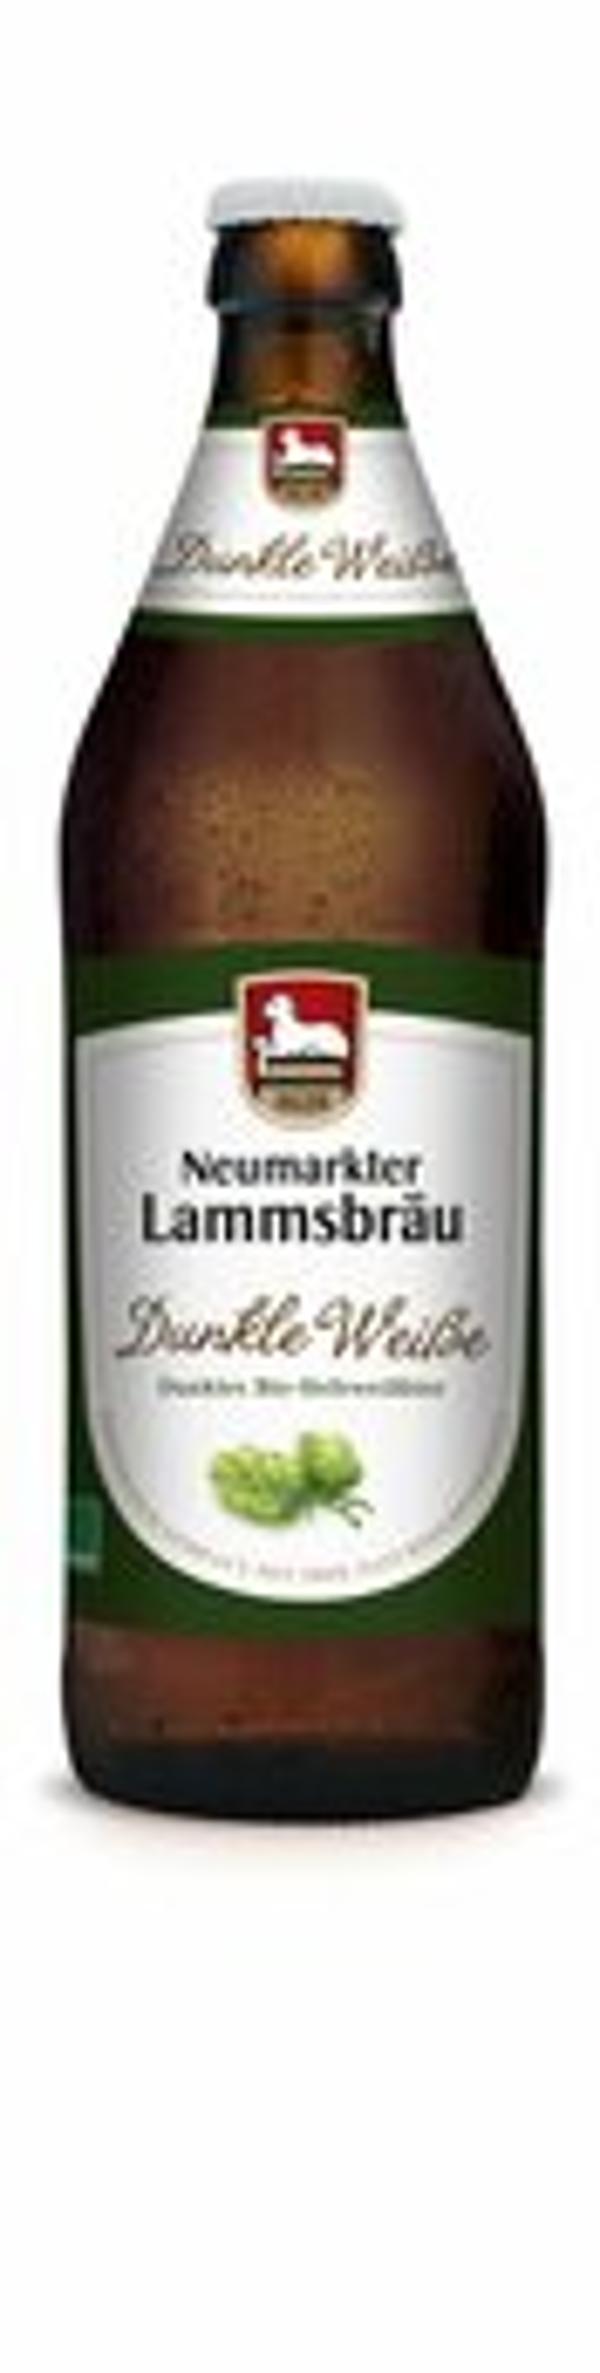 Produktfoto zu Lammsbräu Dunkle Weiße (dunkles Hefeweizen) 0,5l